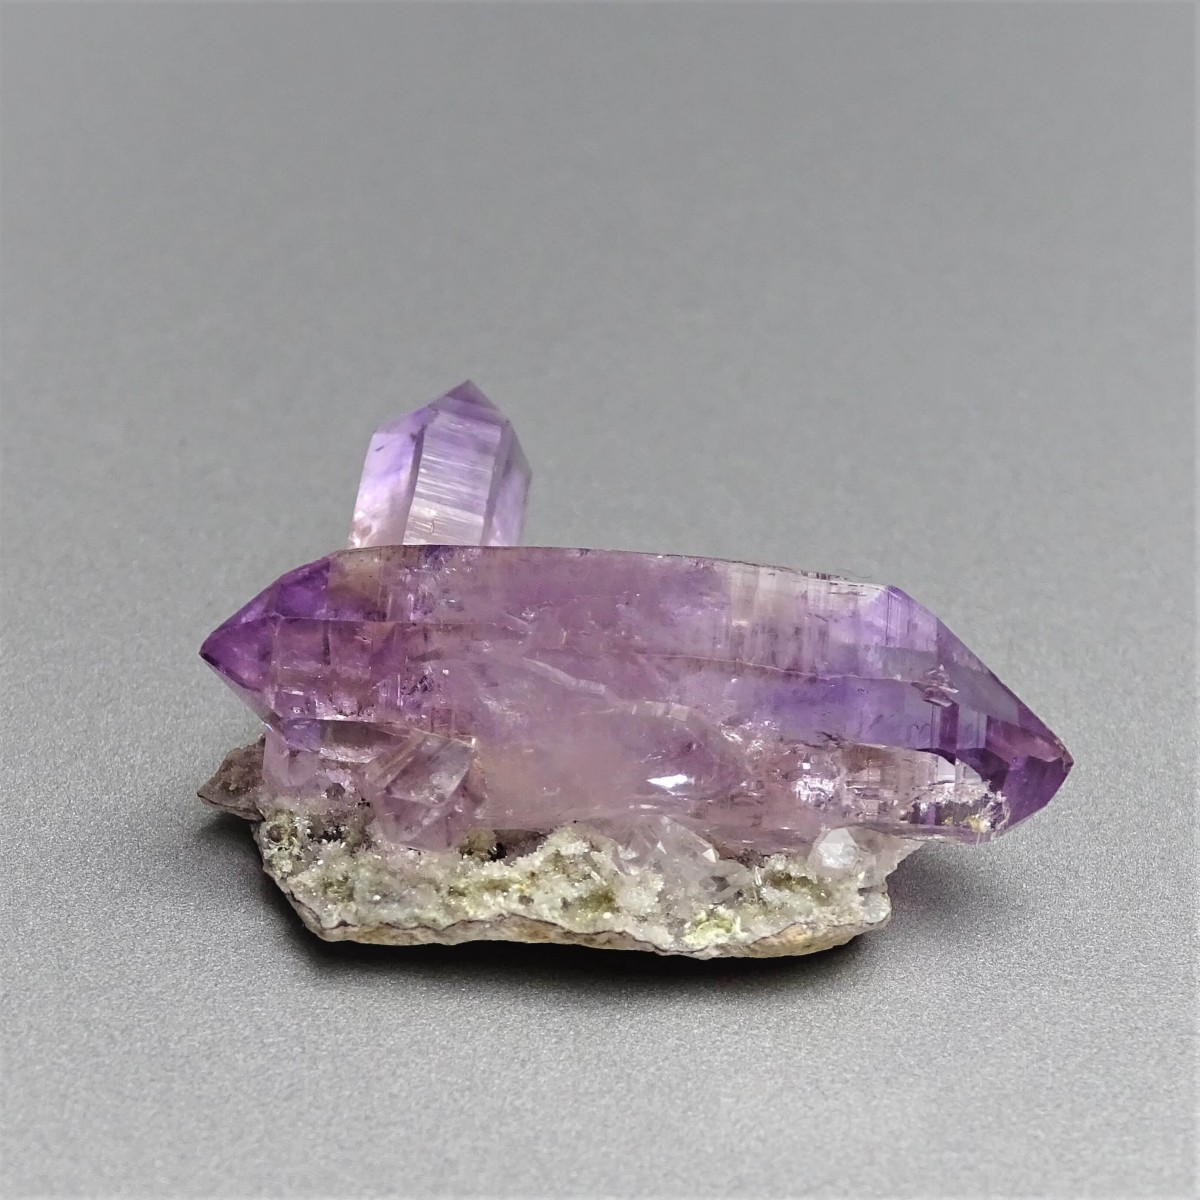 Amethyst natural crystal 11.2g, Mexico